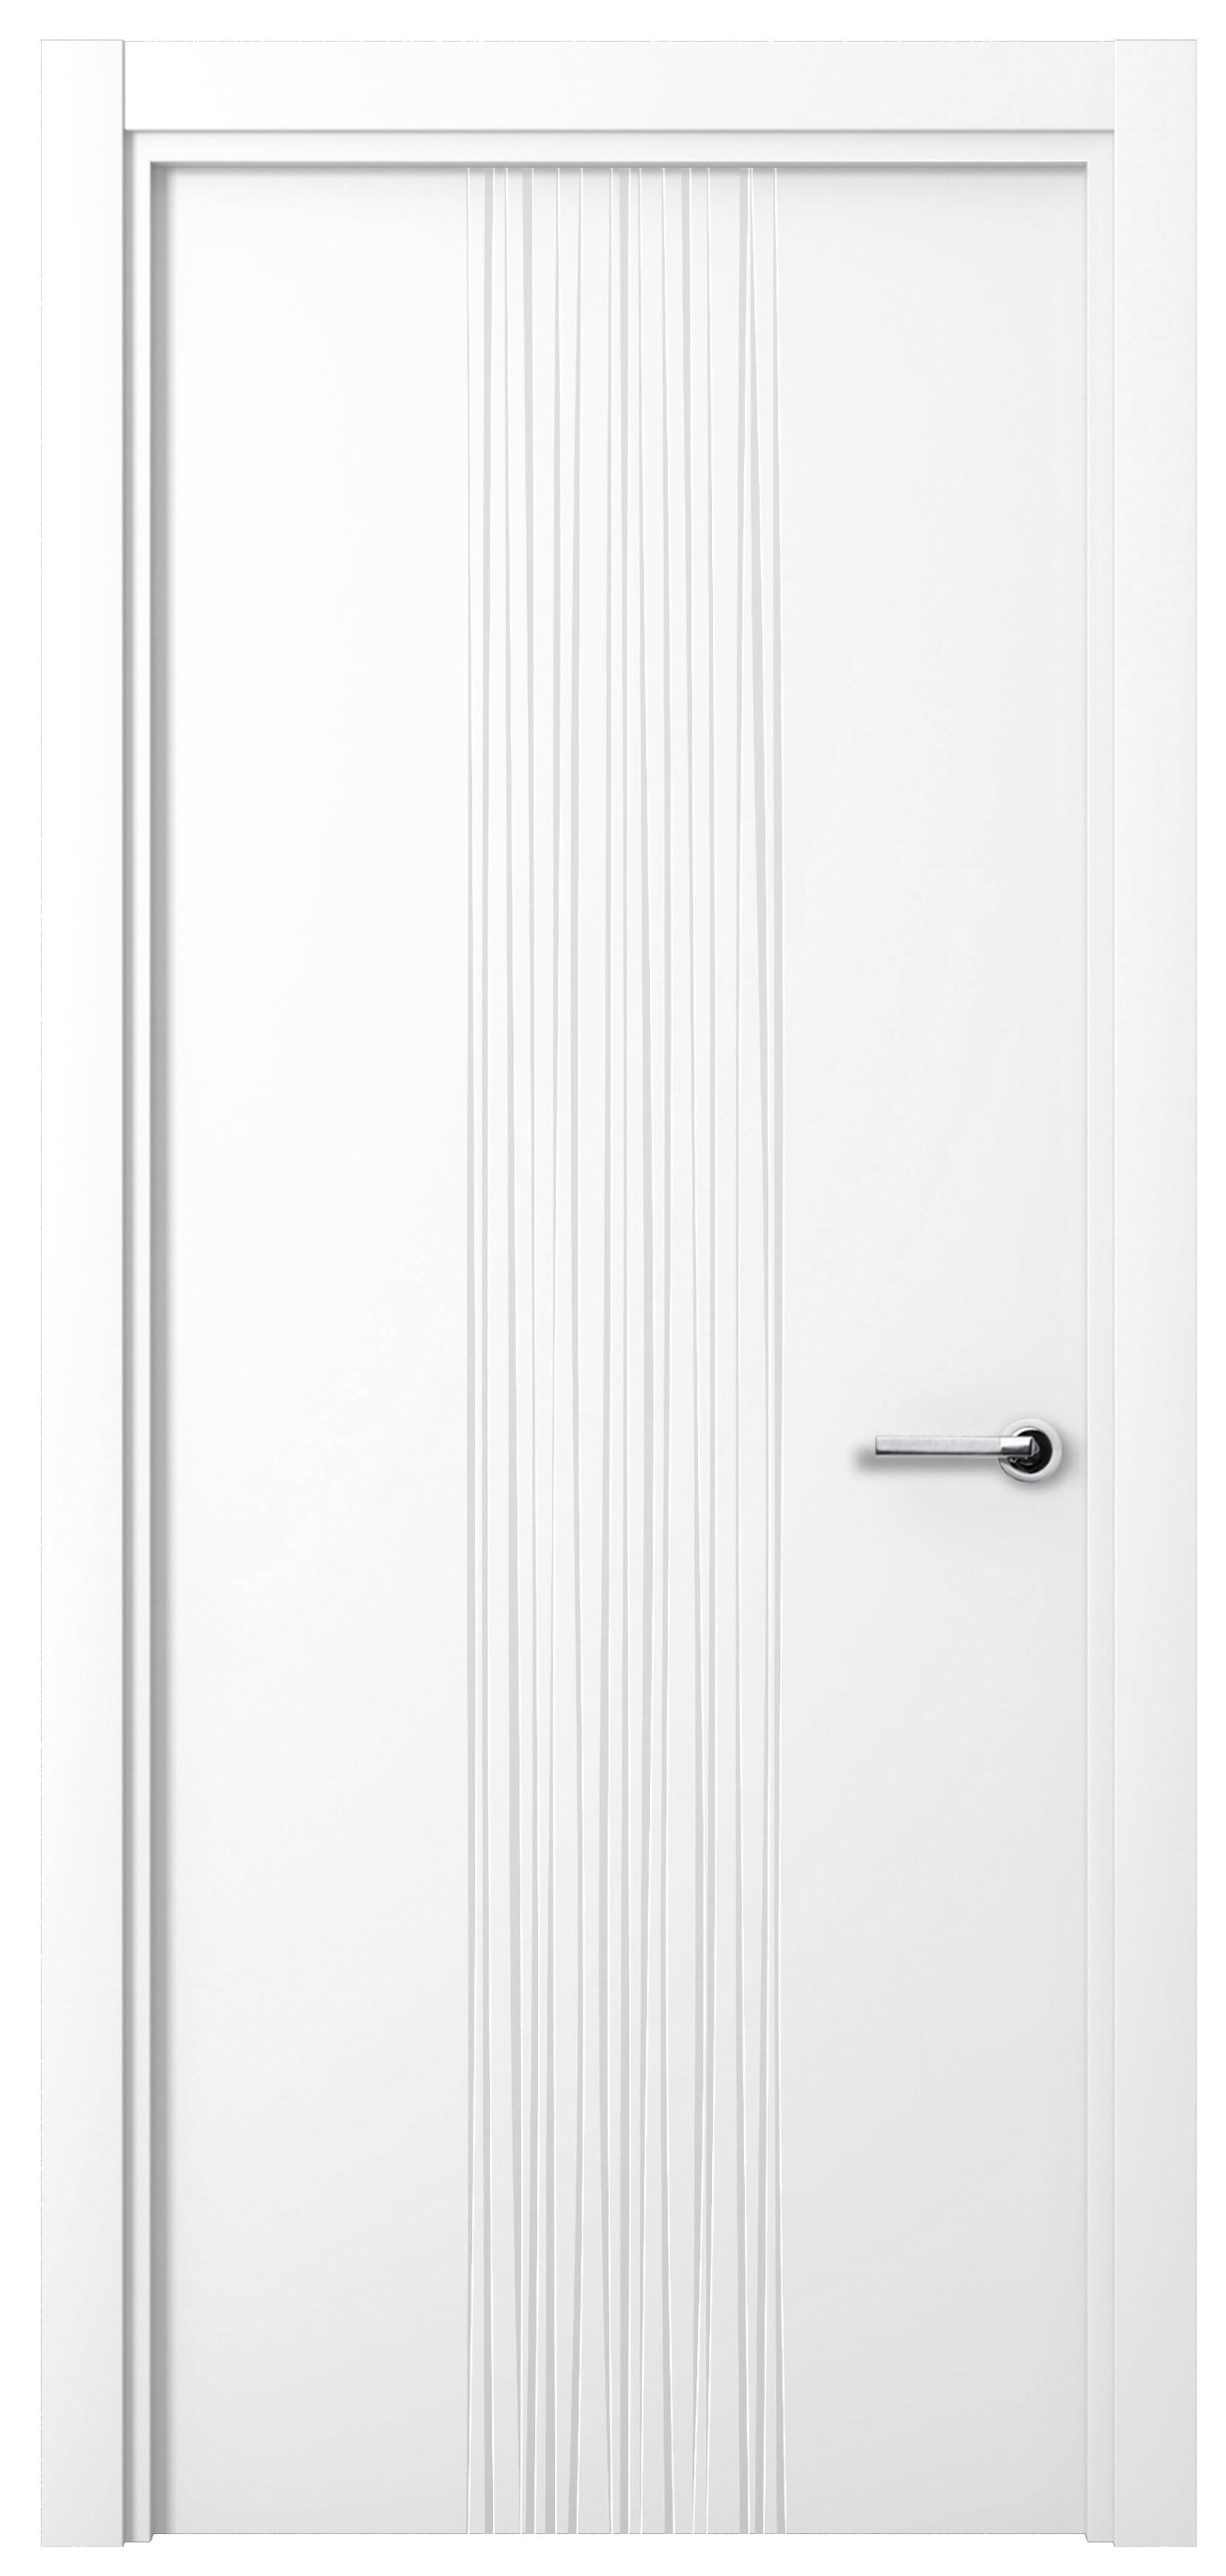 Puerta quevedo premium blanco apertura izquierda 9x72.5cm